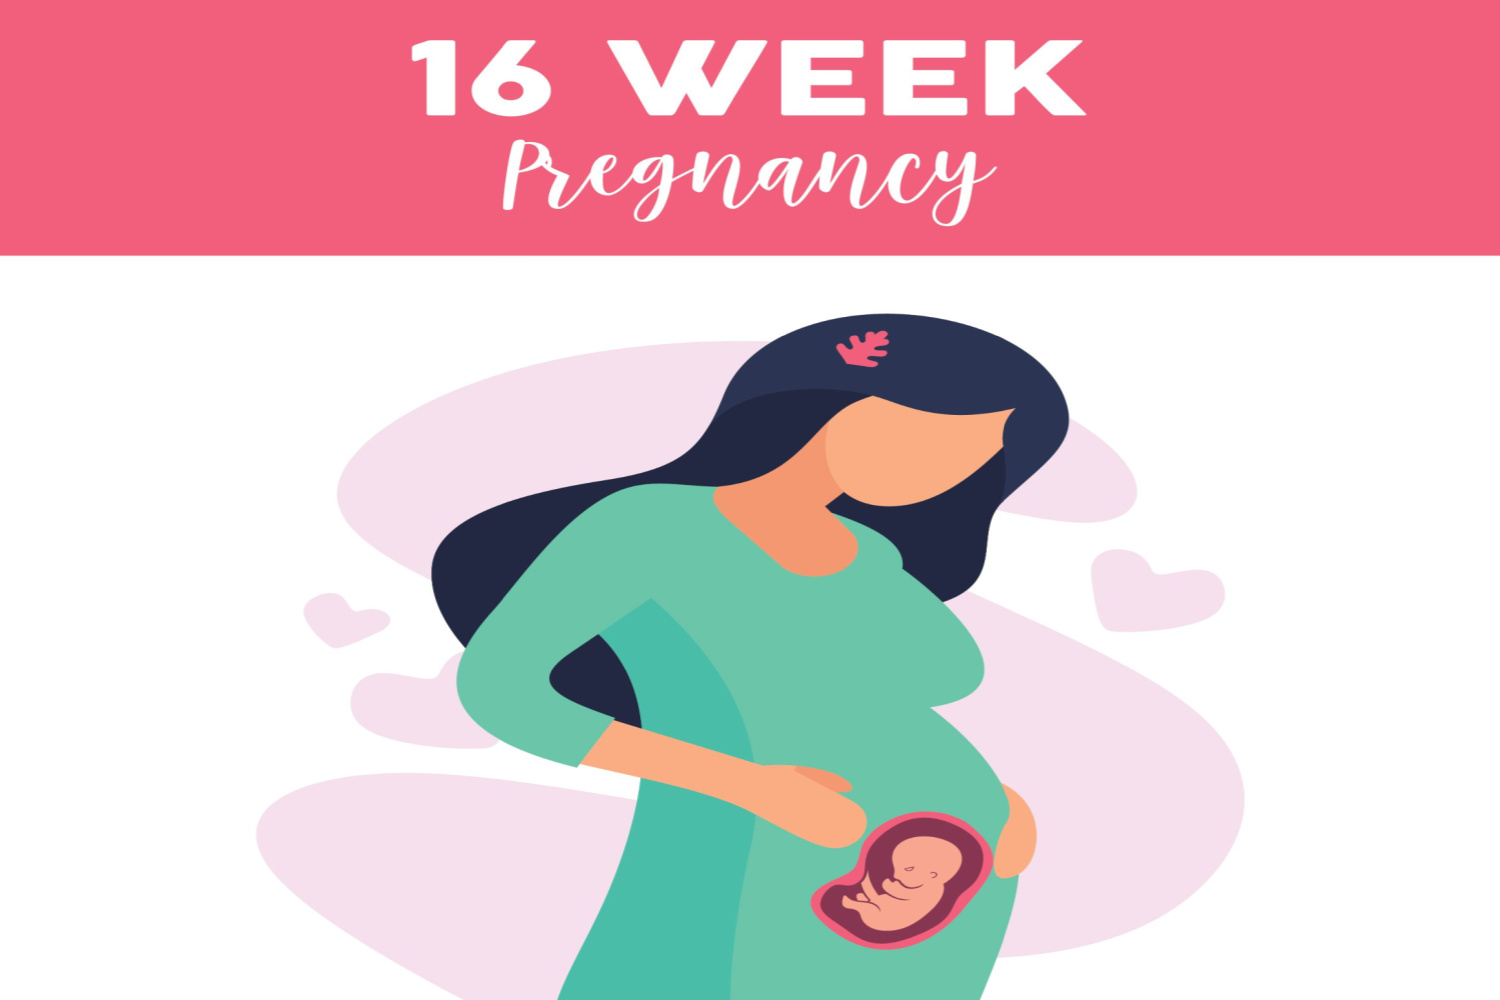 Pregnancy week 16